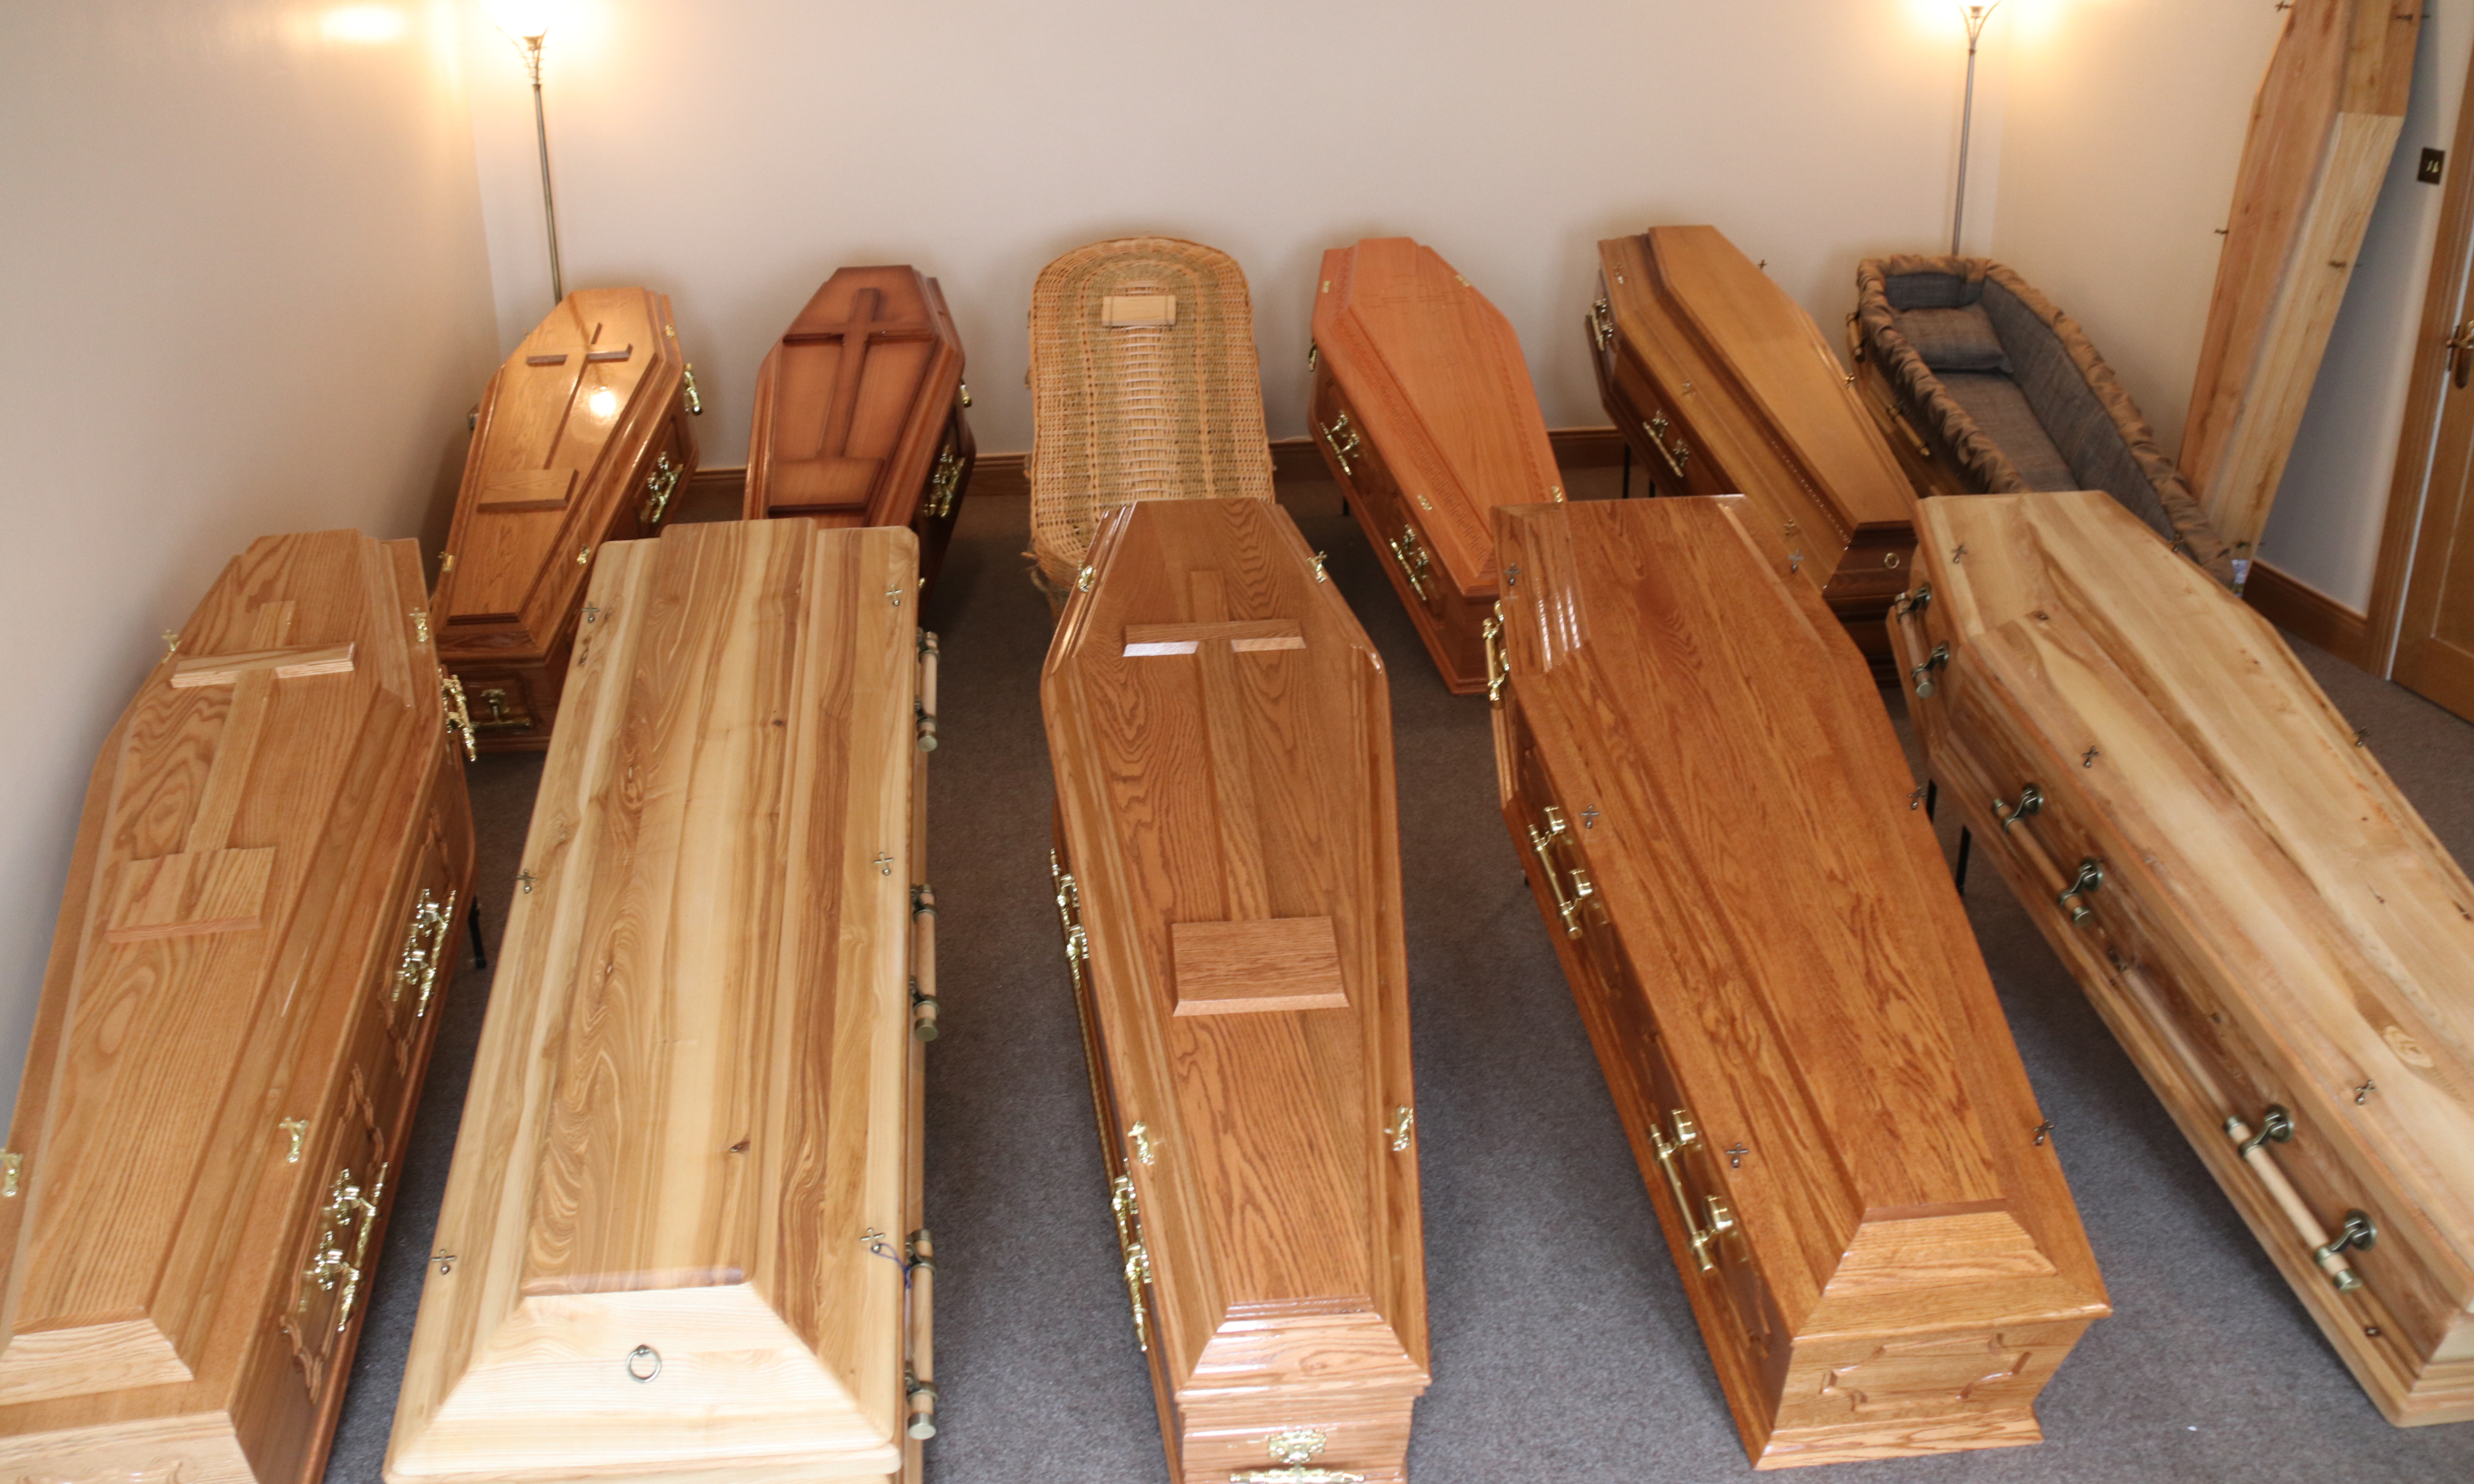 Coffin Market